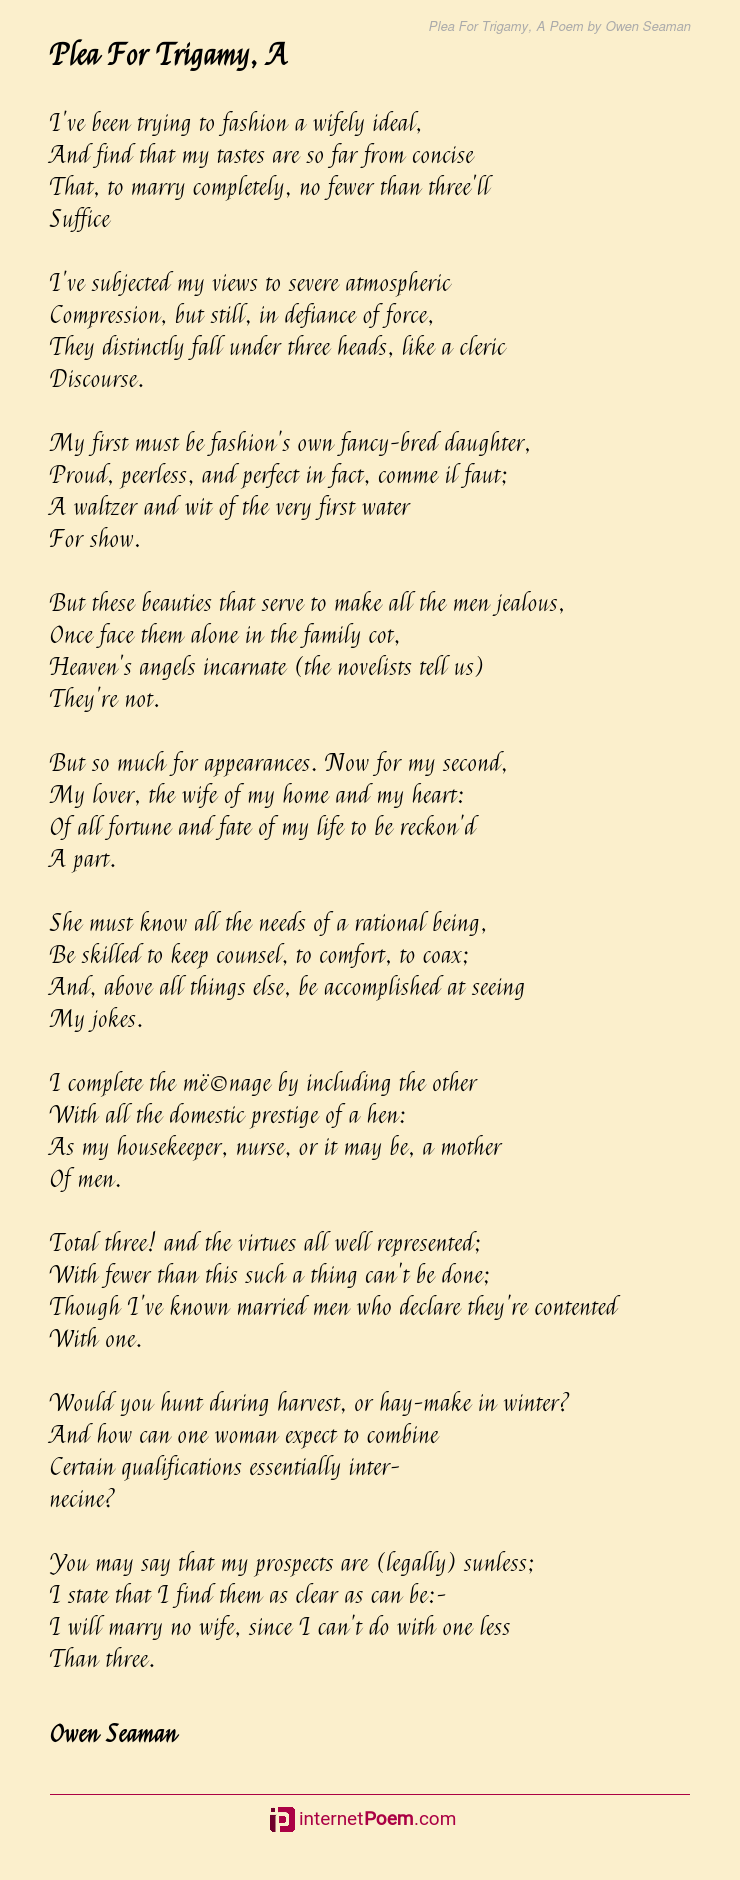 Plea For Trigamy, A Poem by Owen Seaman